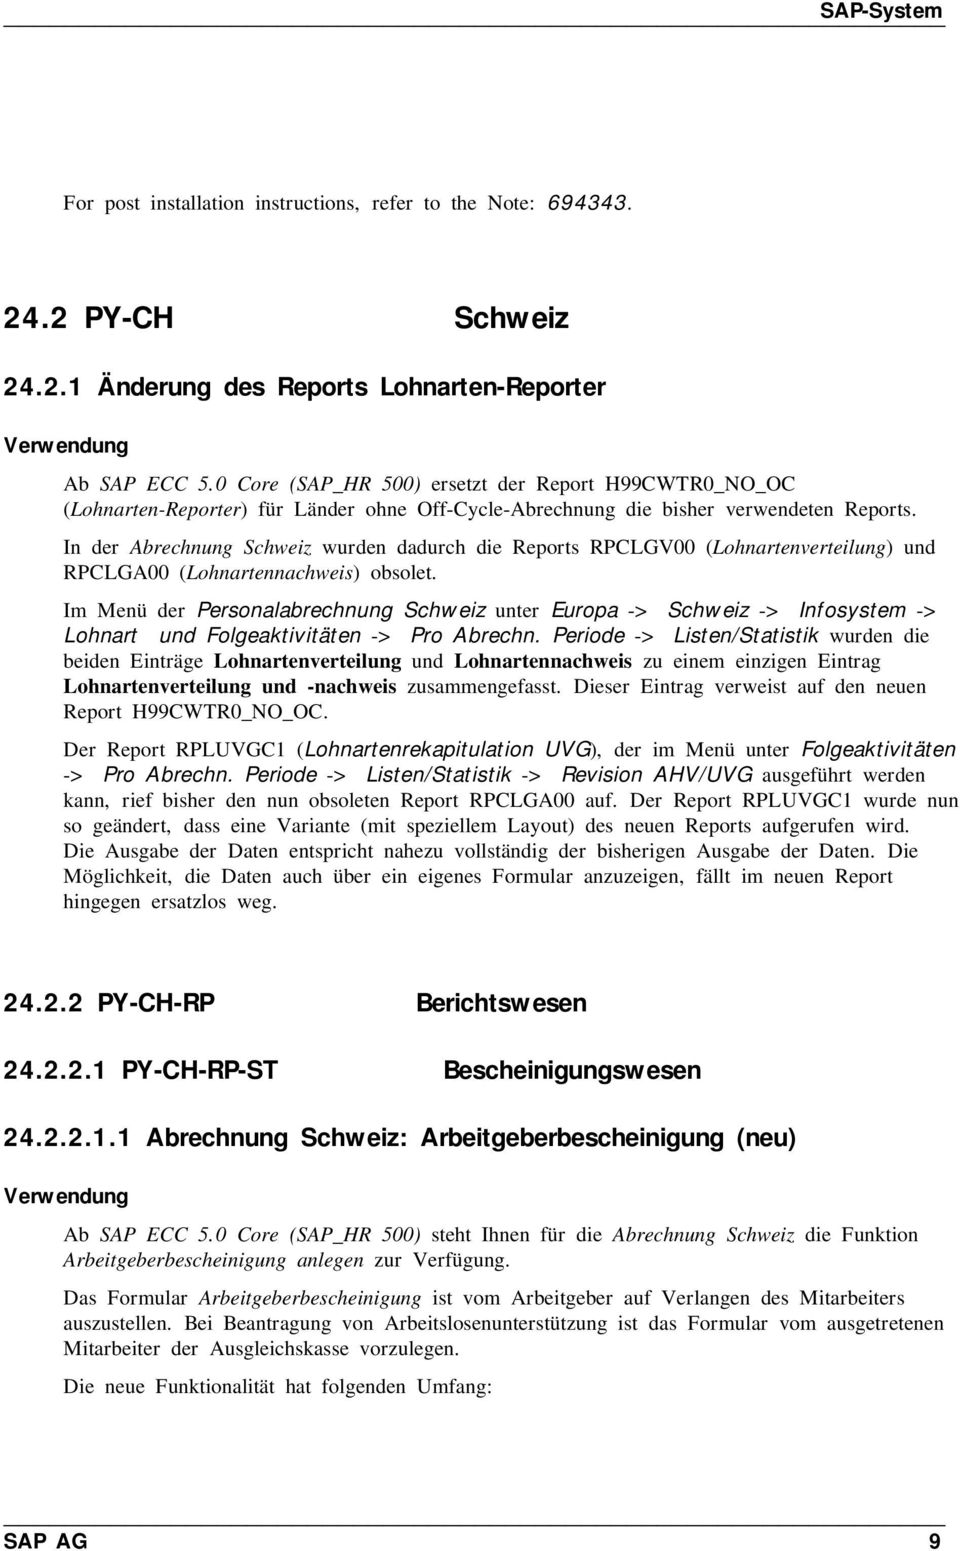 In der Abrechnung Schweiz wurden dadurch die Reports RPCLGV00 (Lohnartenverteilung) und RPCLGA00 (Lohnartennachweis) obsolet.